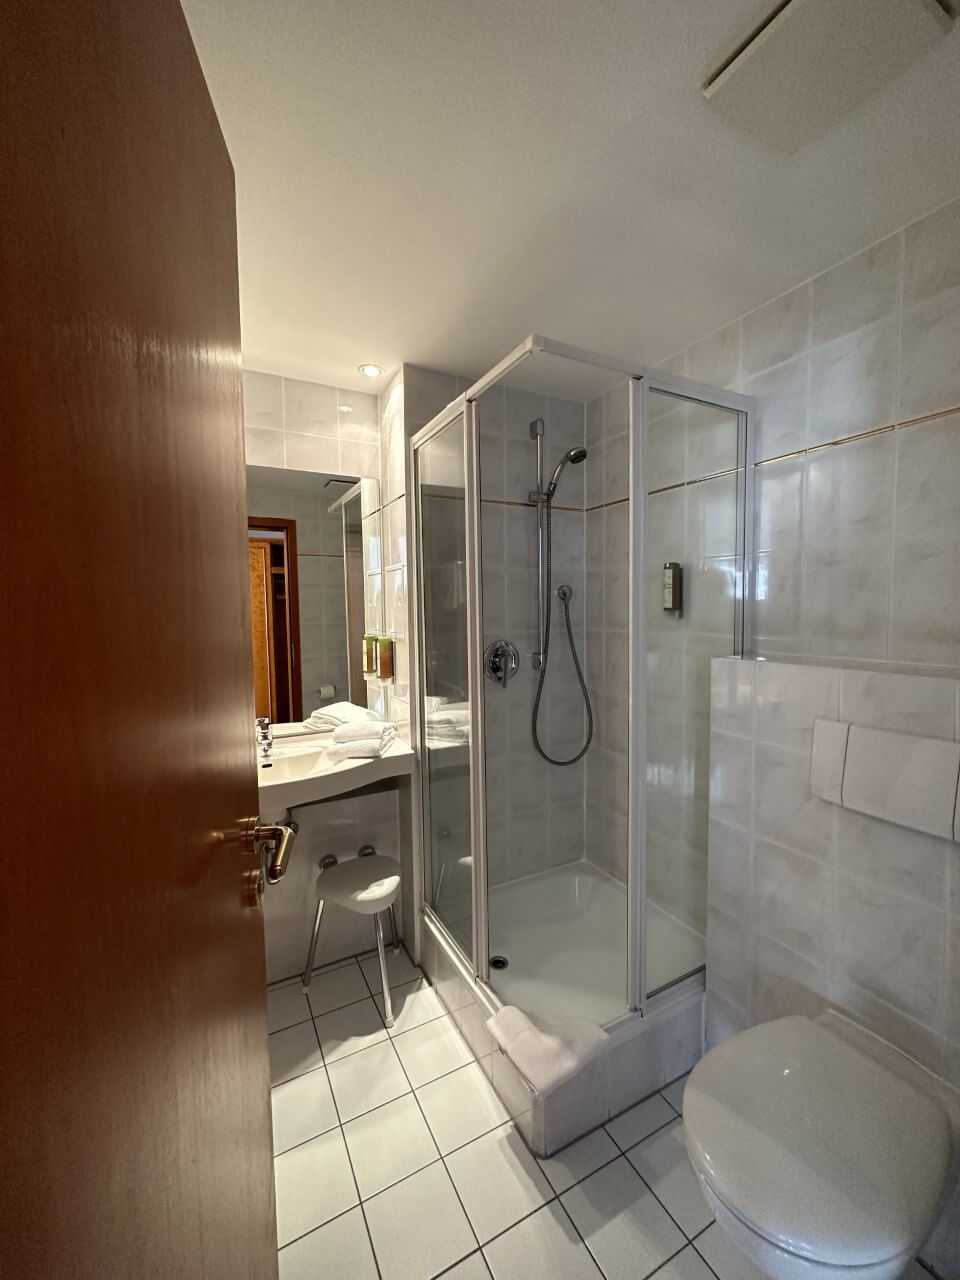 Doppelzimmer Classic Bad Blick auf Dusche